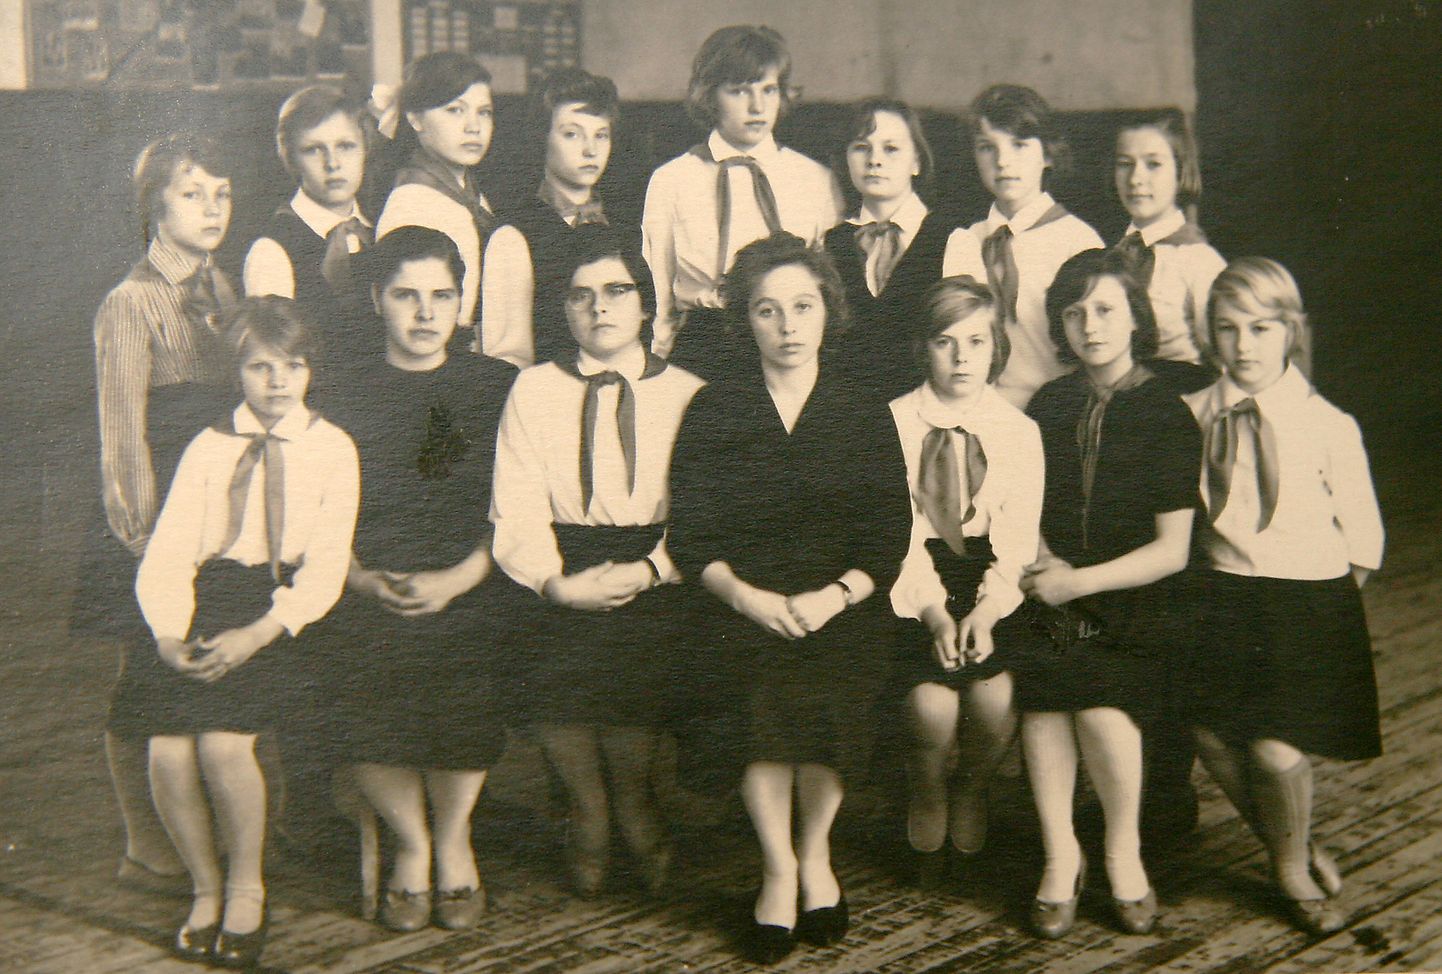 Урве Кильк (на снимке сидит в центре) сама была еще очень молода, когда учила Мерике Пери и Сирье Палло (стоят слева, третья и четвертая соответственно).